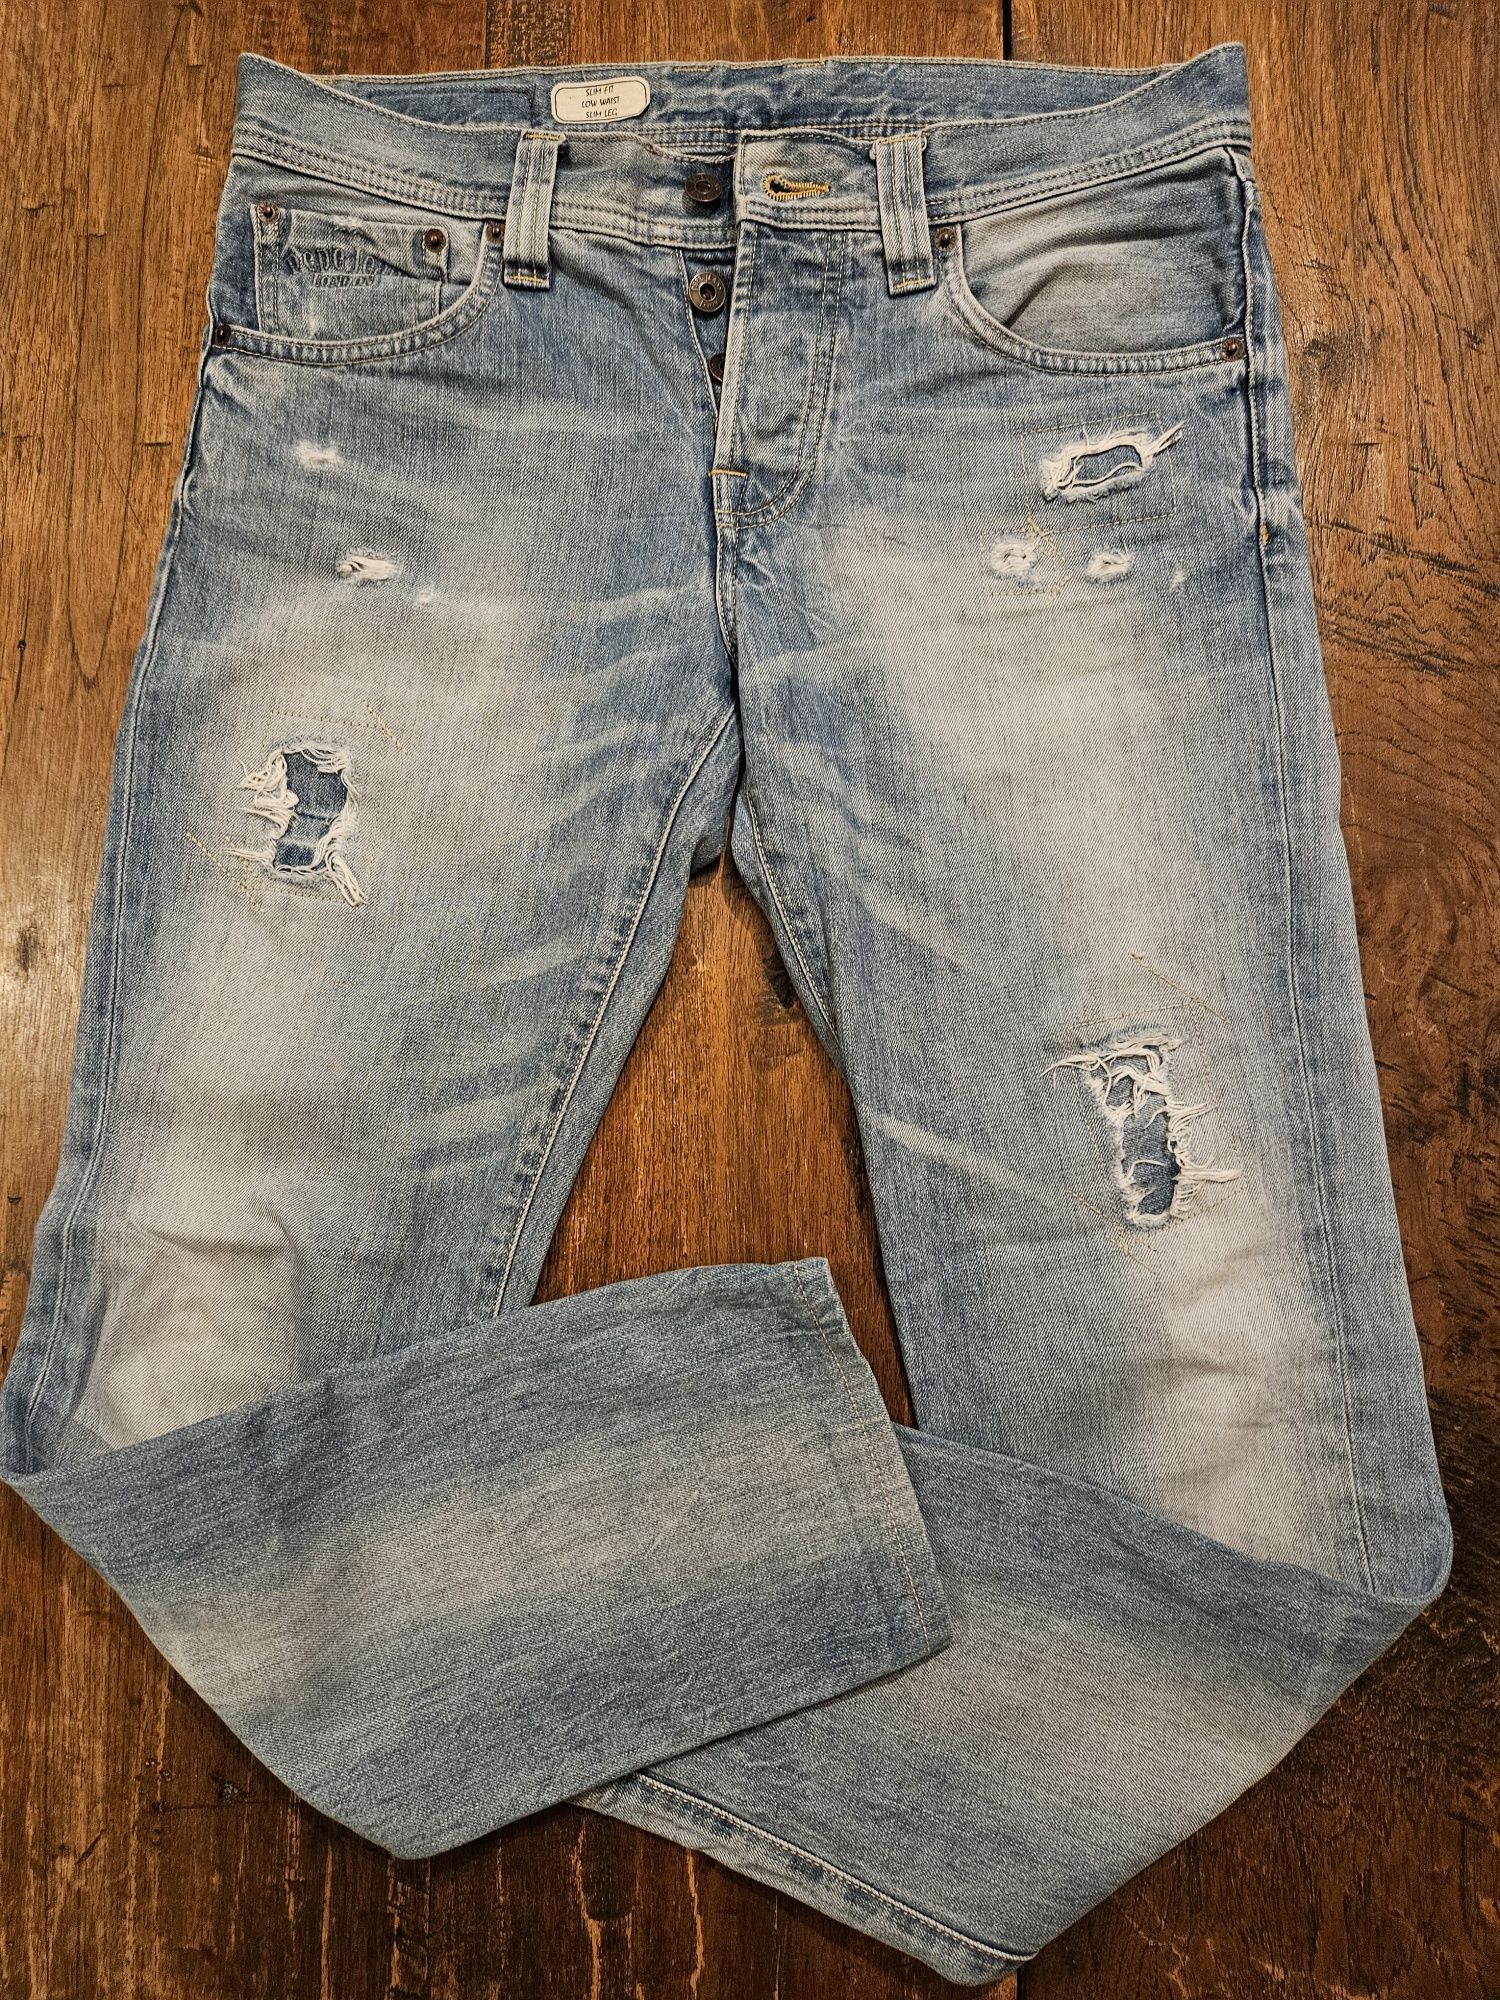 Spodnie typu  jeans Pepe Jeans 32/32. Rezerwacja